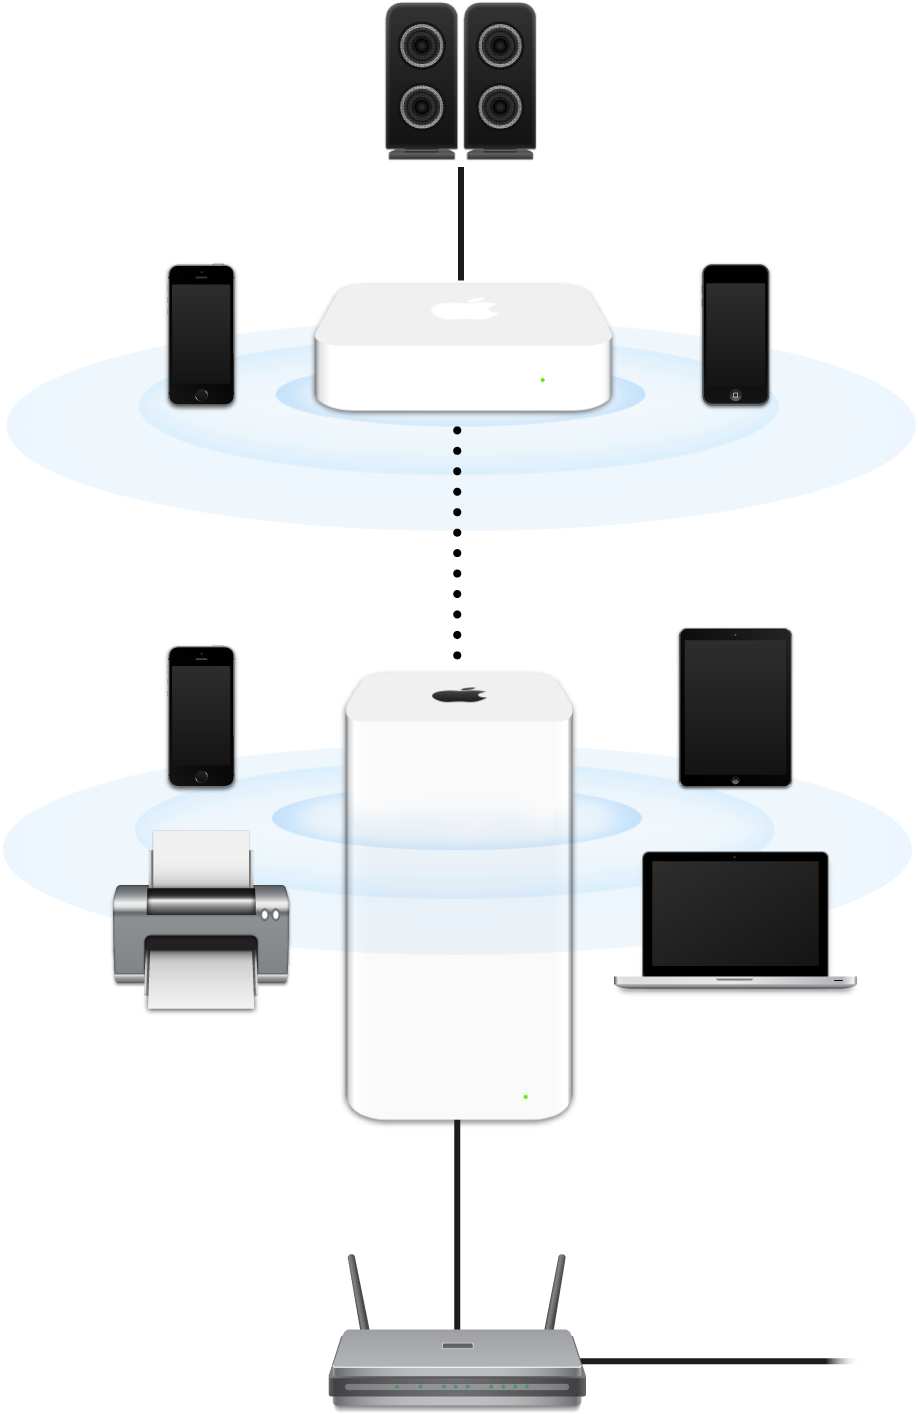 AirPort Extreme और AirPort Express सहित कोई विस्तारित नेटवर्क मॉडम से कनेक्ट है और अनेक प्रकार के डिवाइस का प्रसारण कर रहा है।